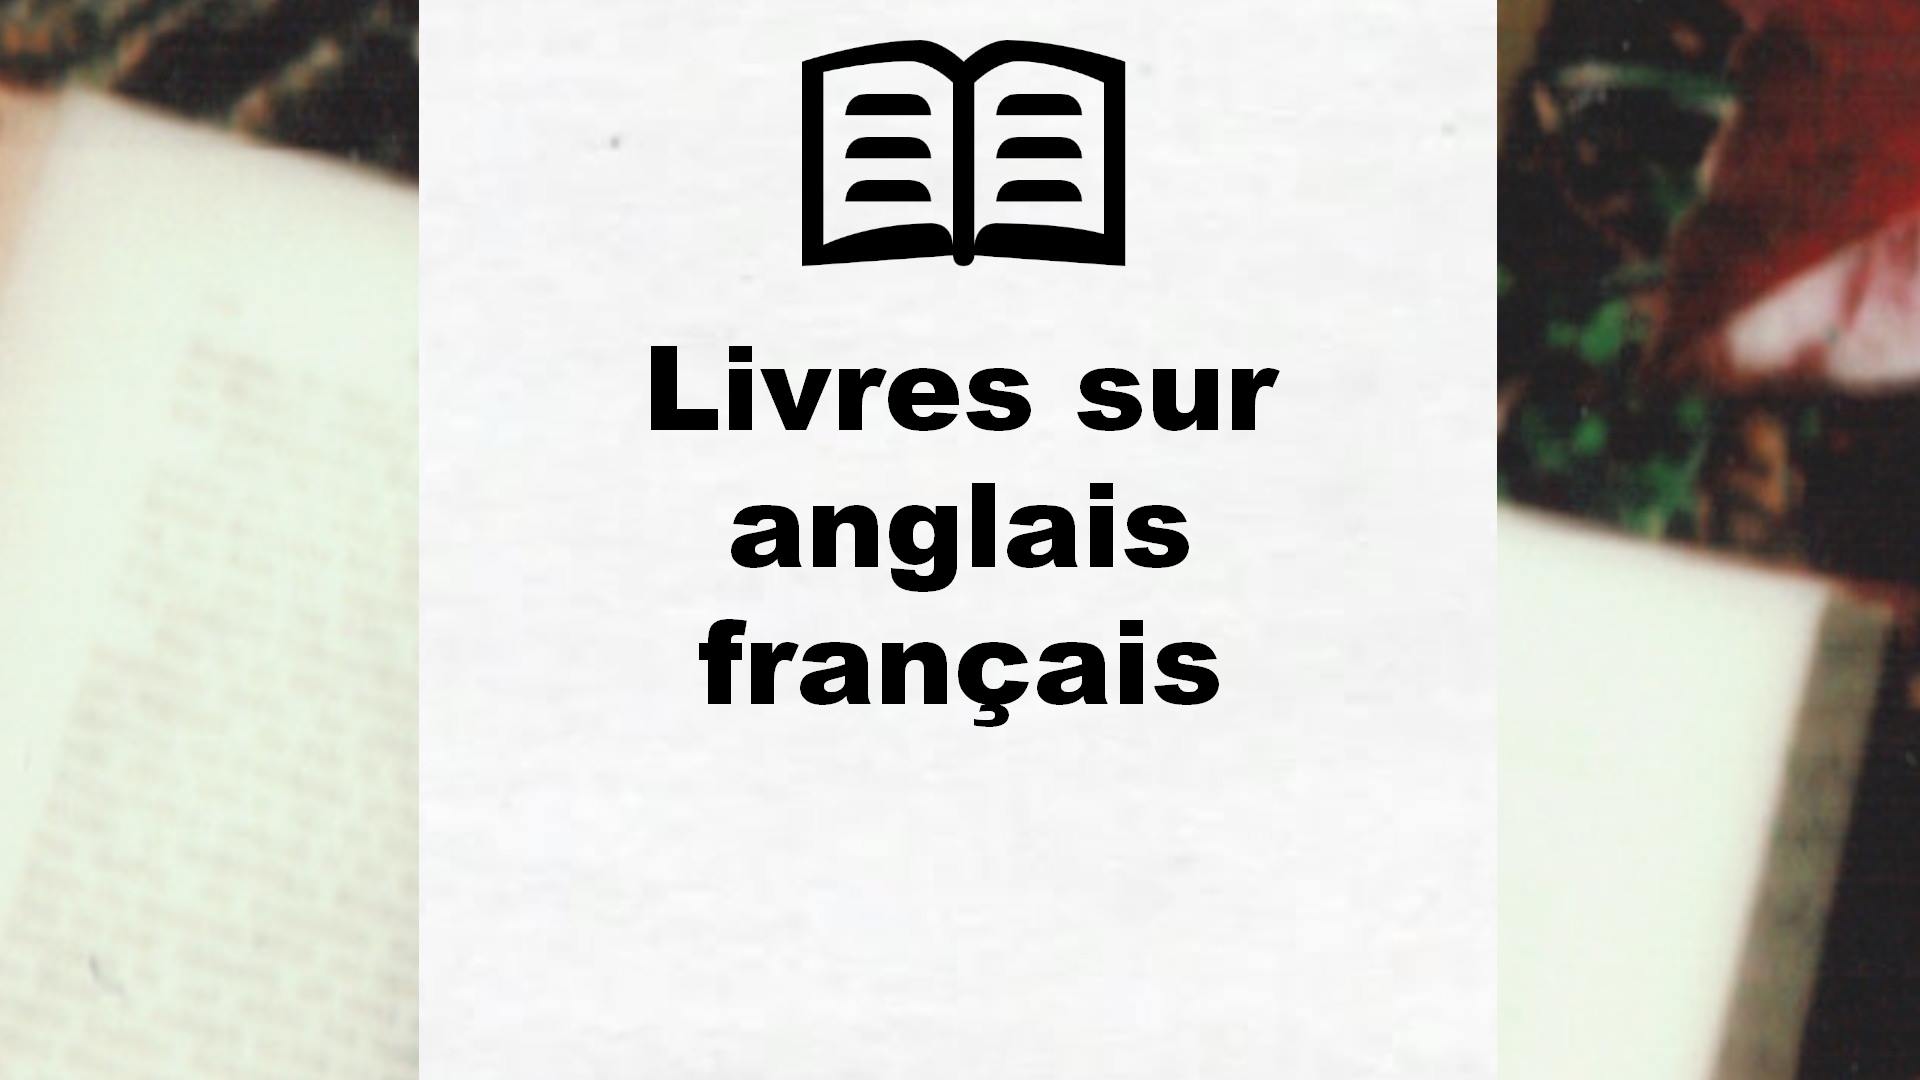 Livres sur anglais français